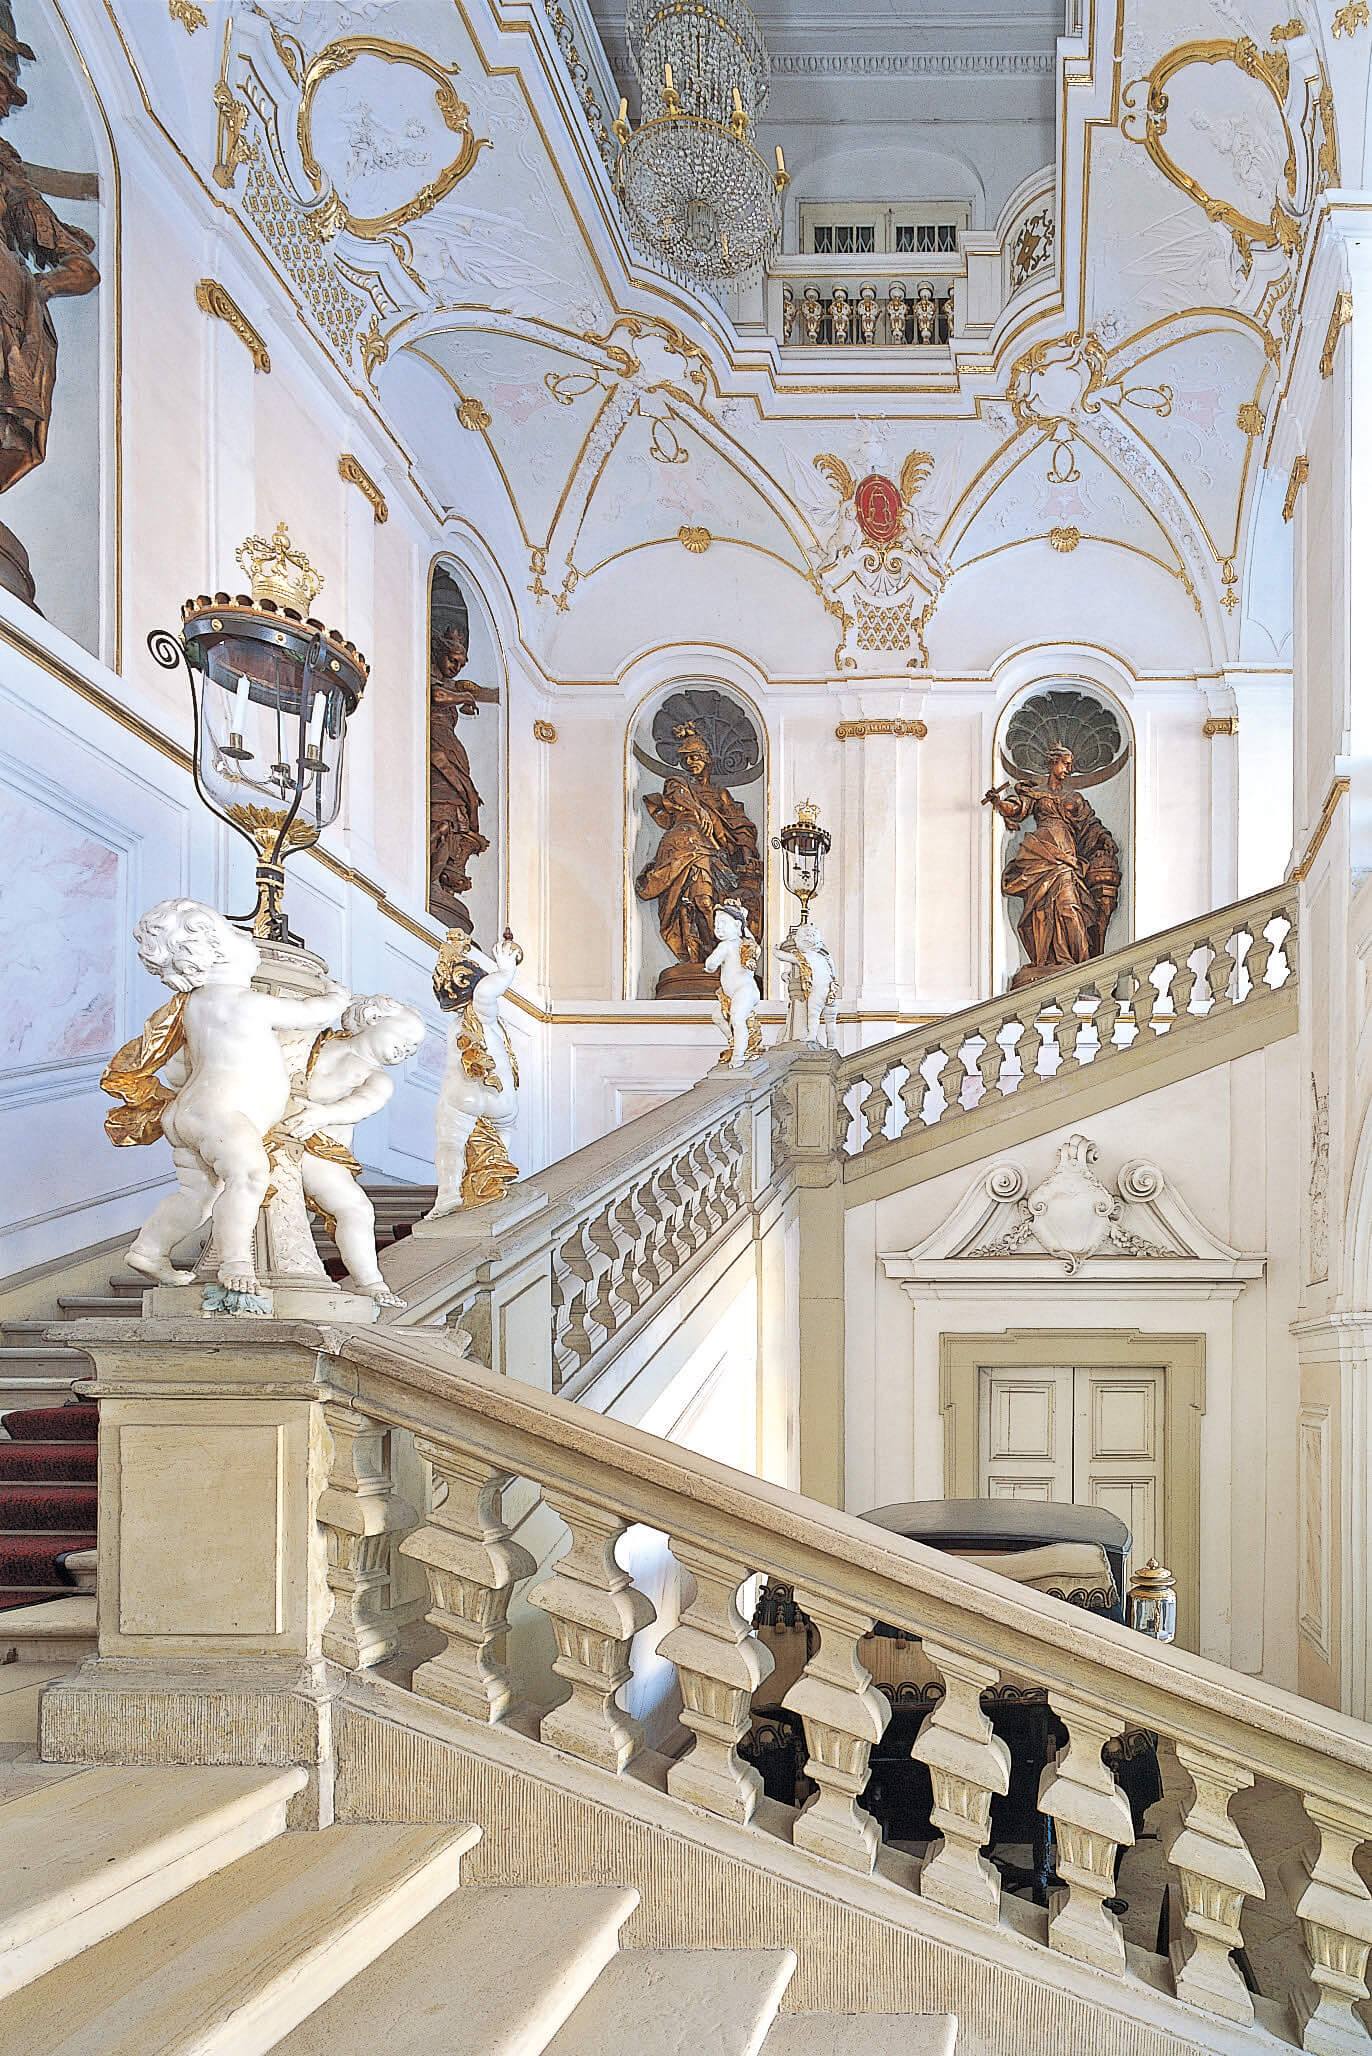 Cung điện Ludwigsburg đức